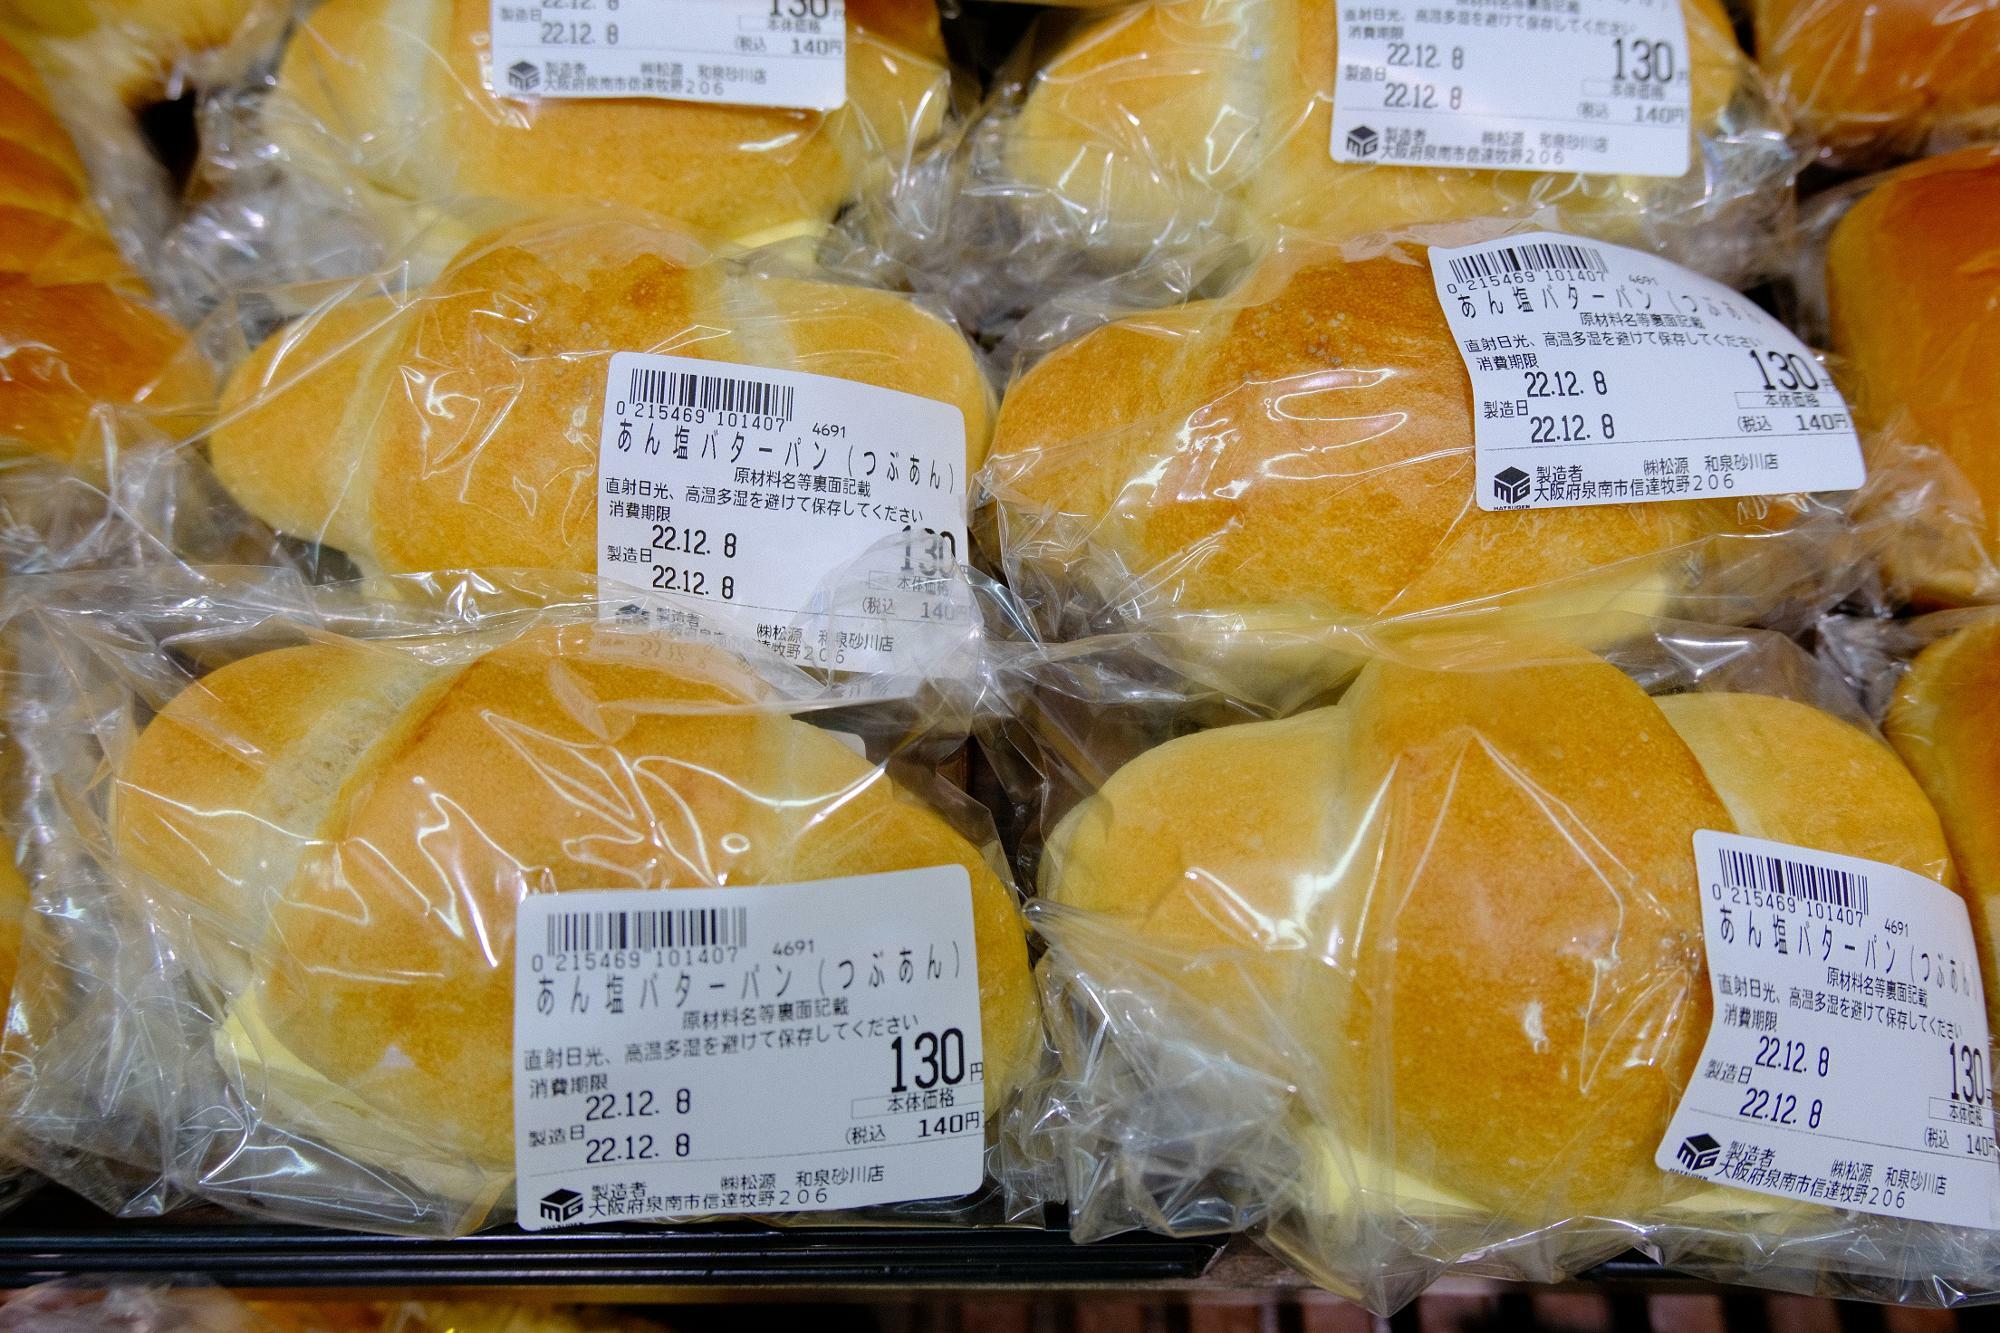 「あん塩バターパン(つぶあん)」130 円(税抜)